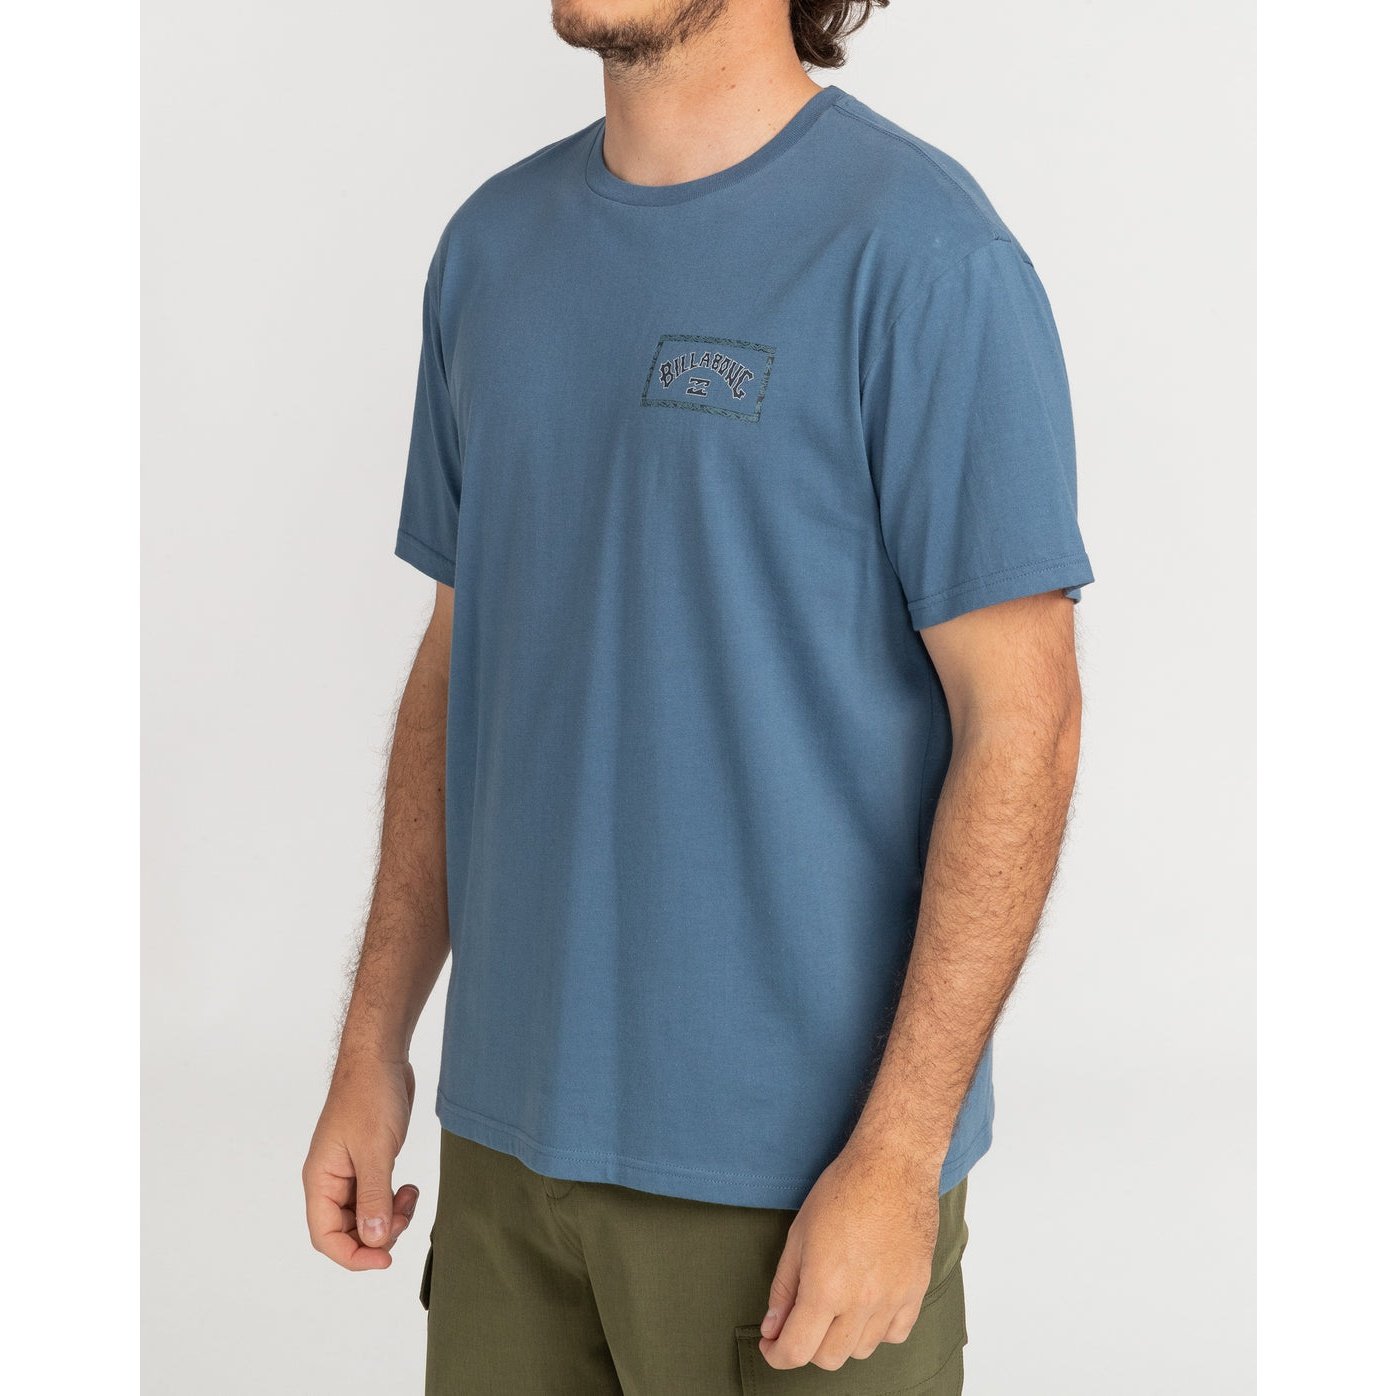 ADIV Arch - Short Sleeve T-Shirt for Men